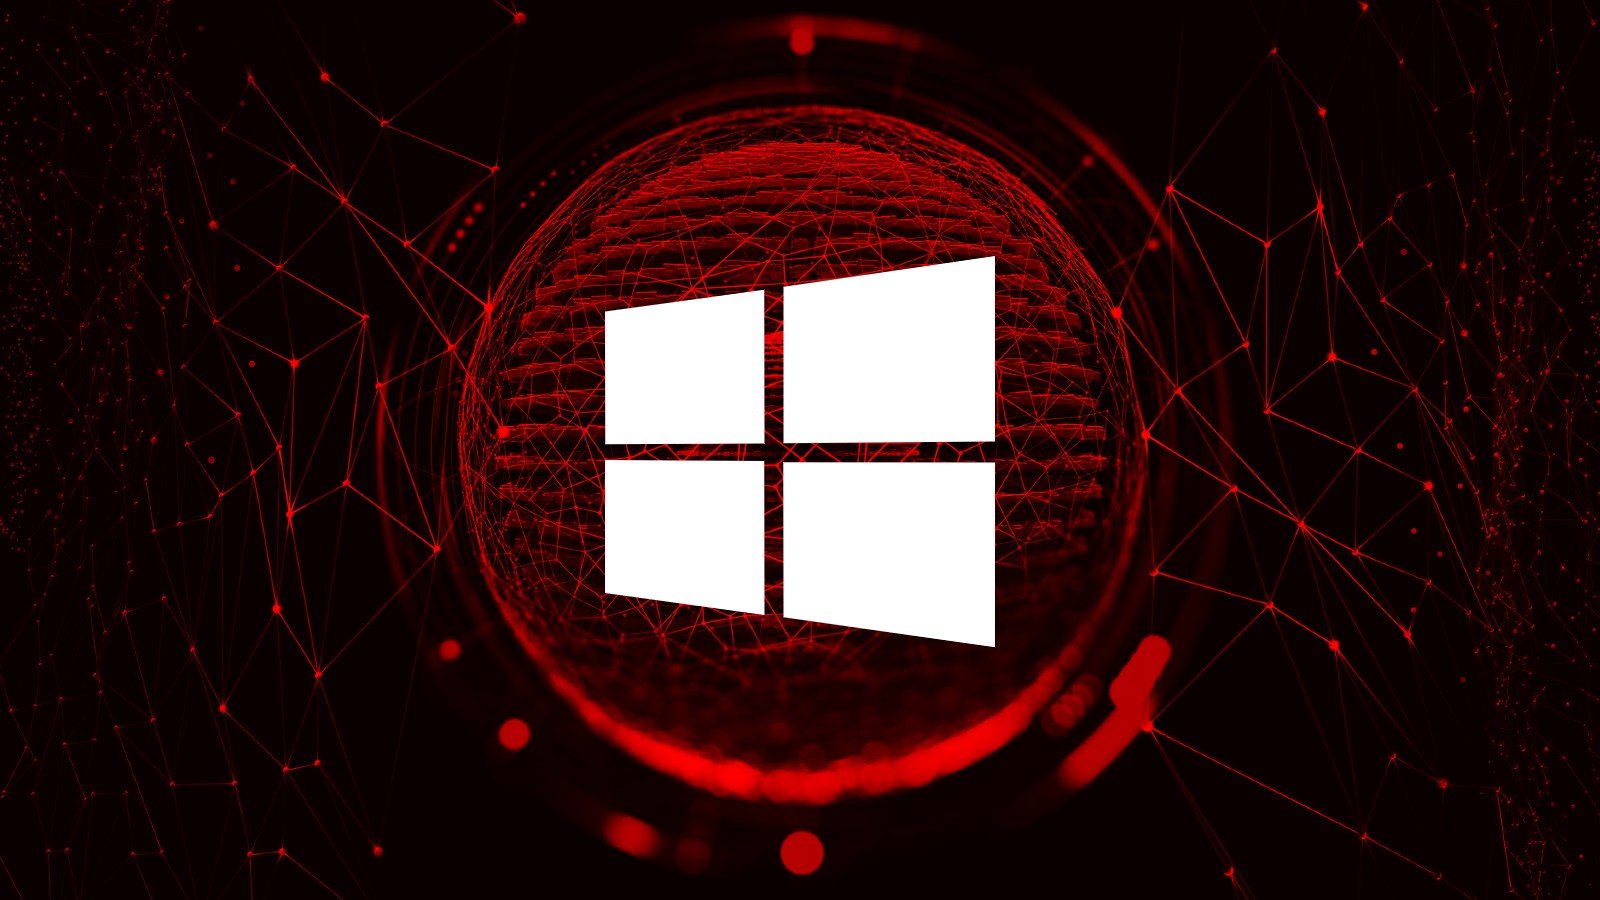 Microsoft herinnert gebruikers eraan dat Windows binnenkort onveilige TLS zal uitschakelen